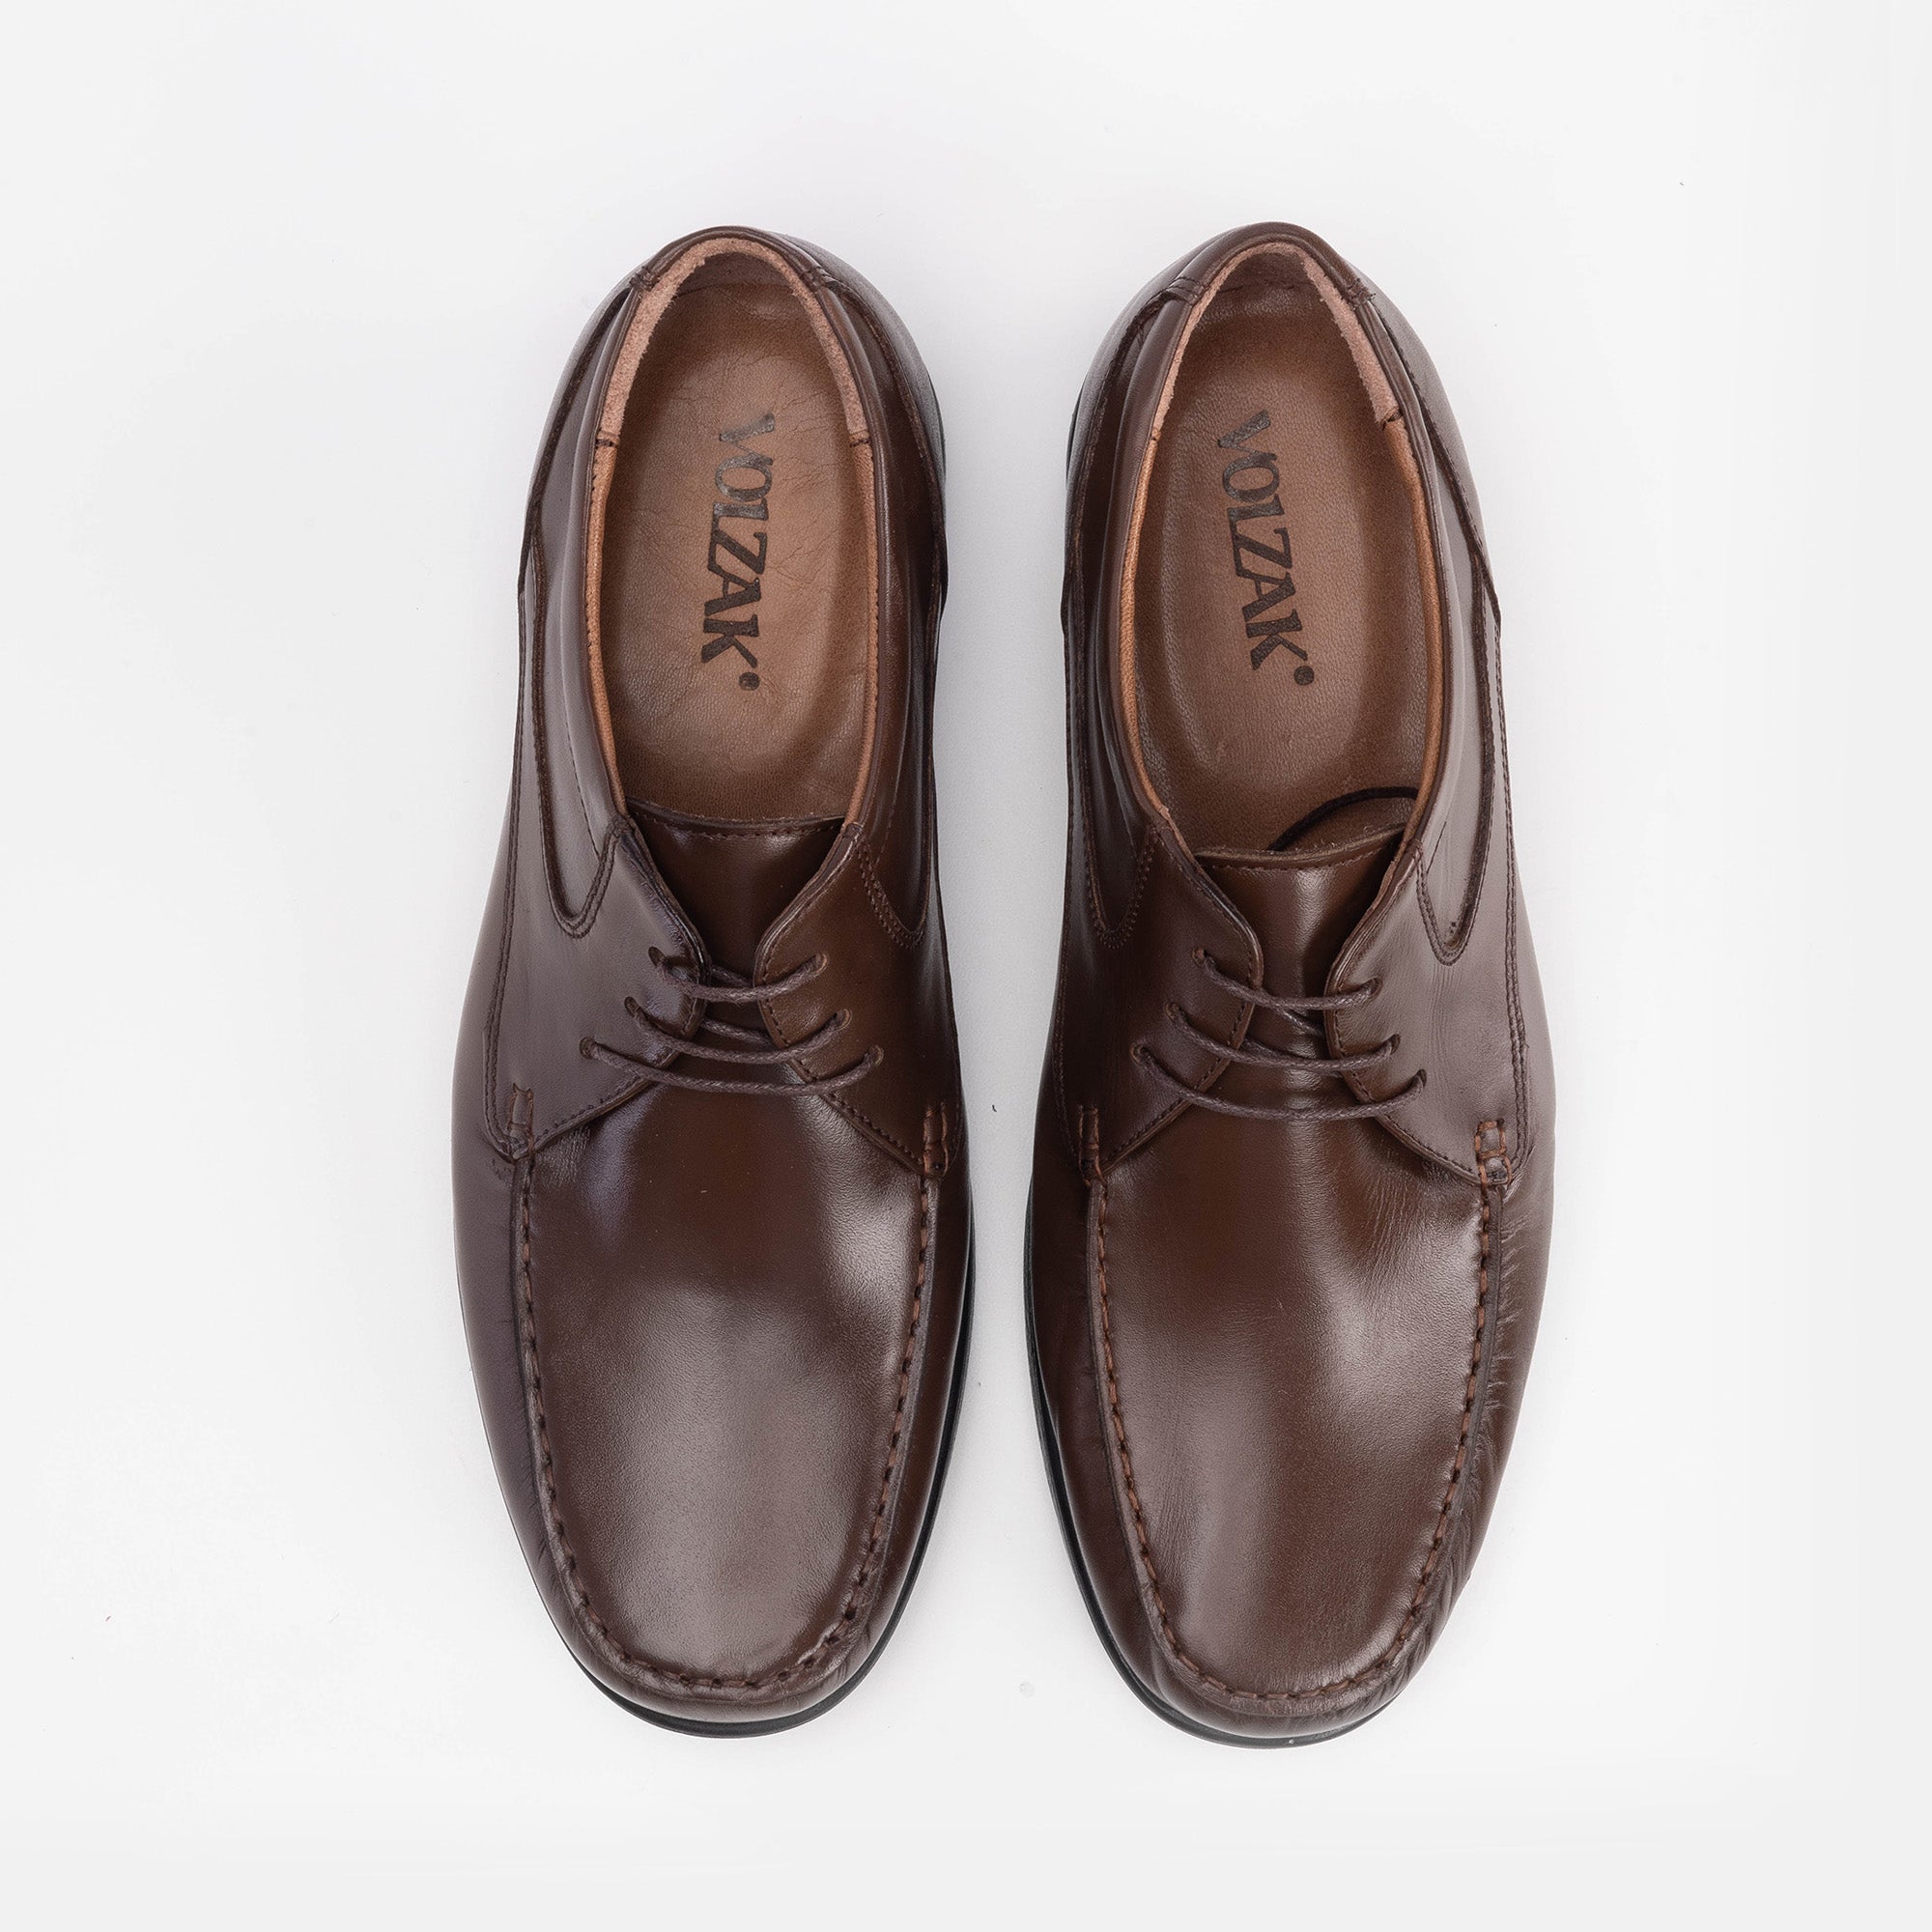 '''5207 Chaussure en cuir marron